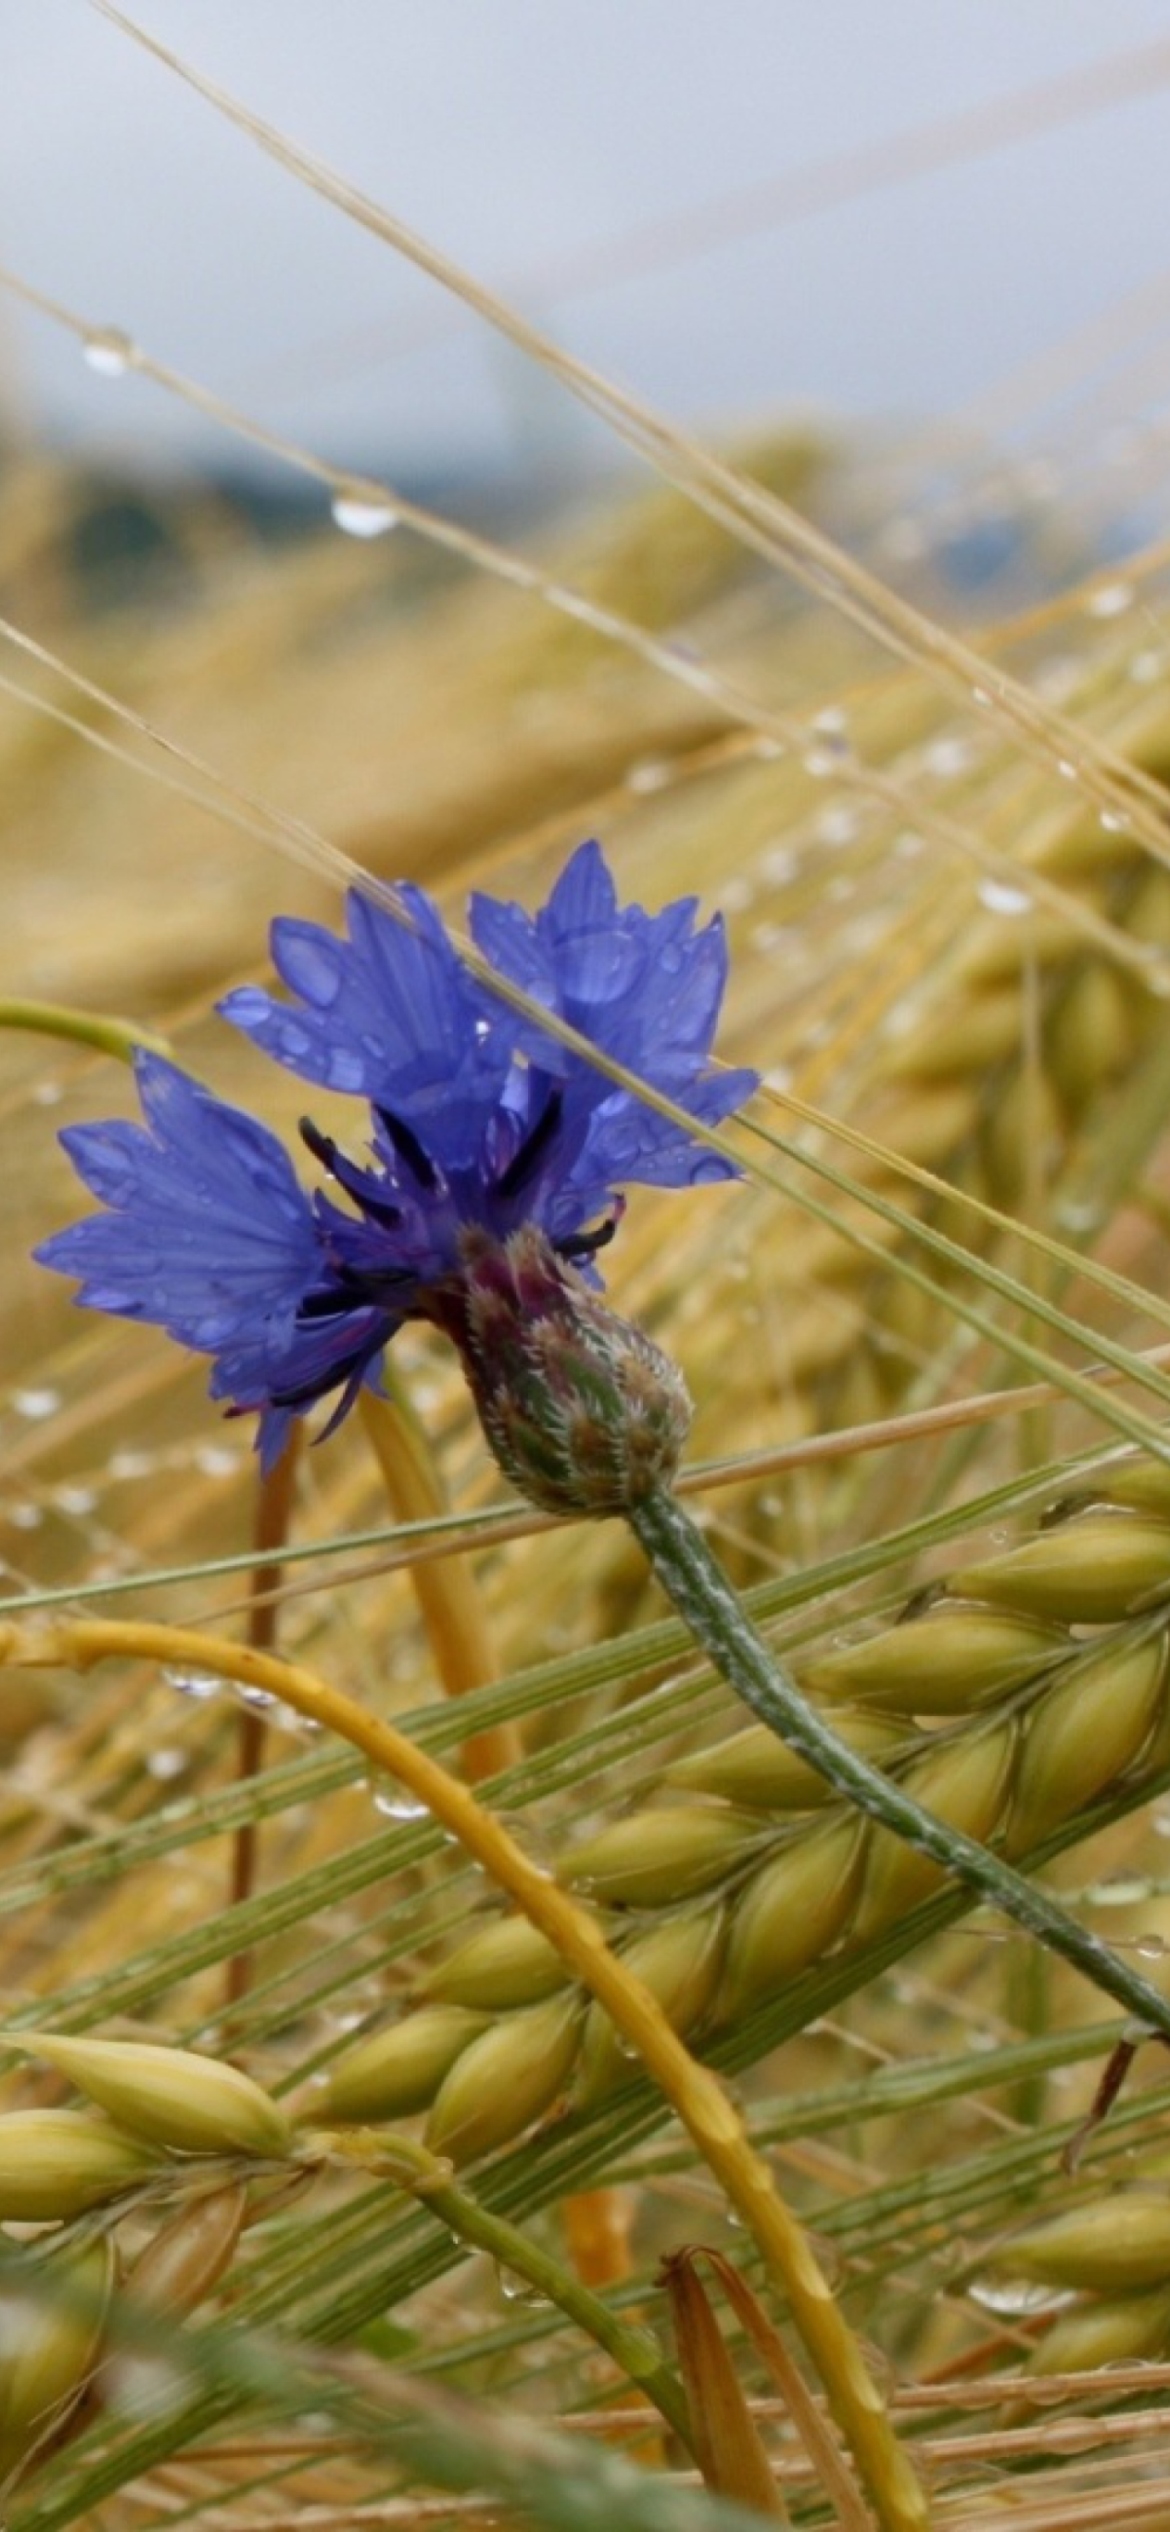 Обои Wheat And Blue Flower 1170x2532